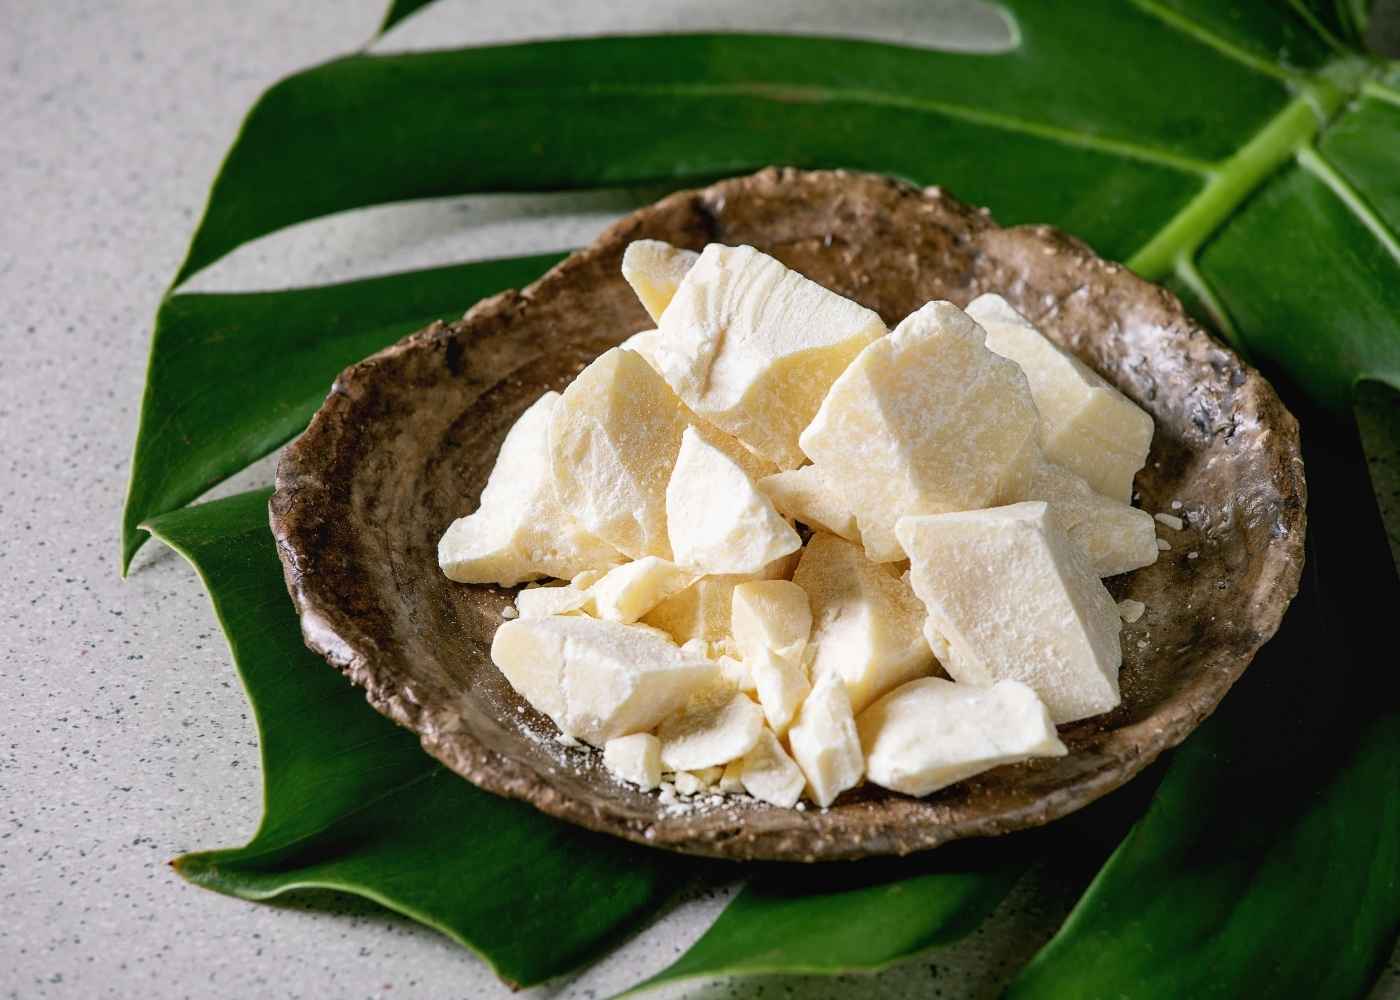 Beurre de Cacao (Raffiné & Désodorisé)